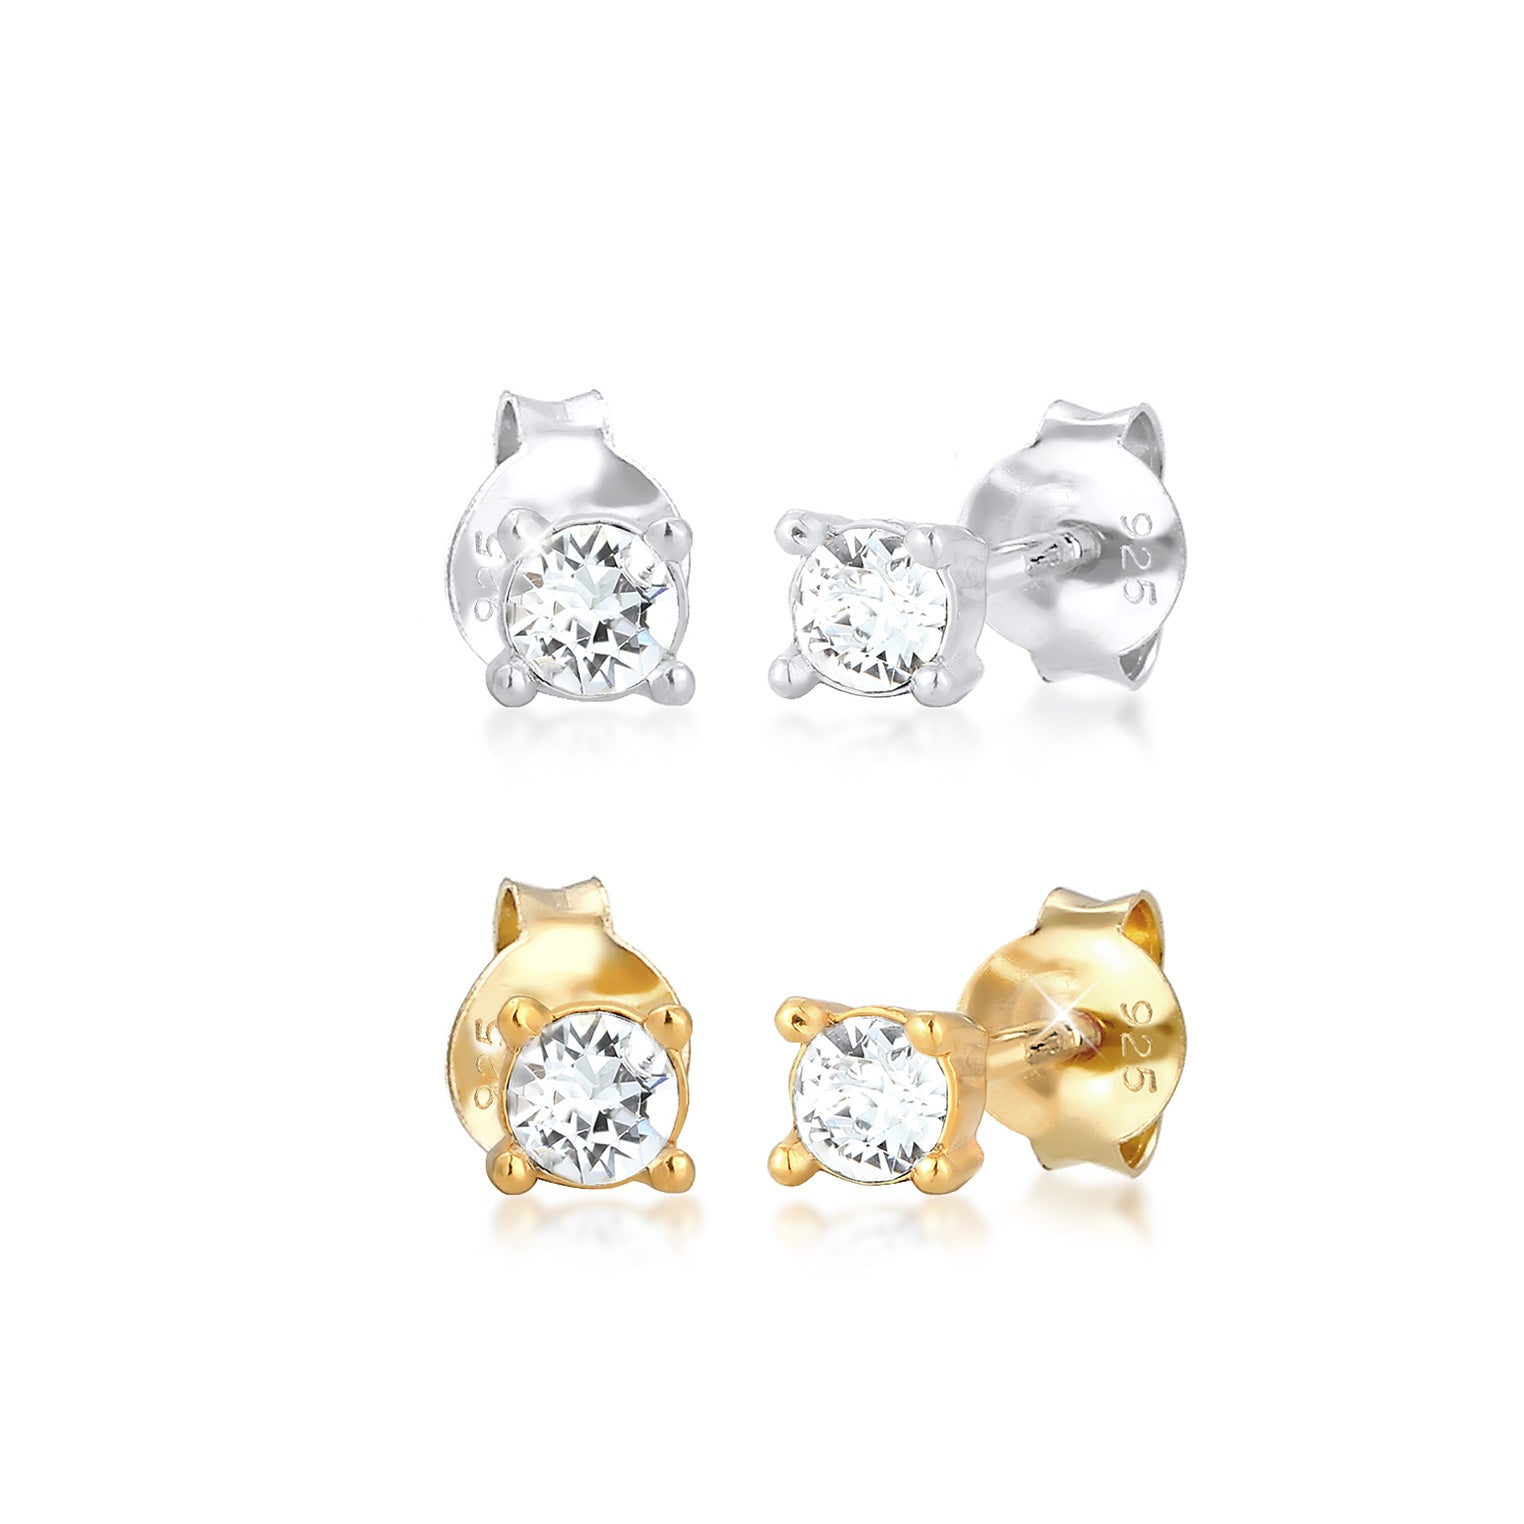 Ohrringset | Kristall ( Weiß ) | 925 Sterling Silber vergoldet